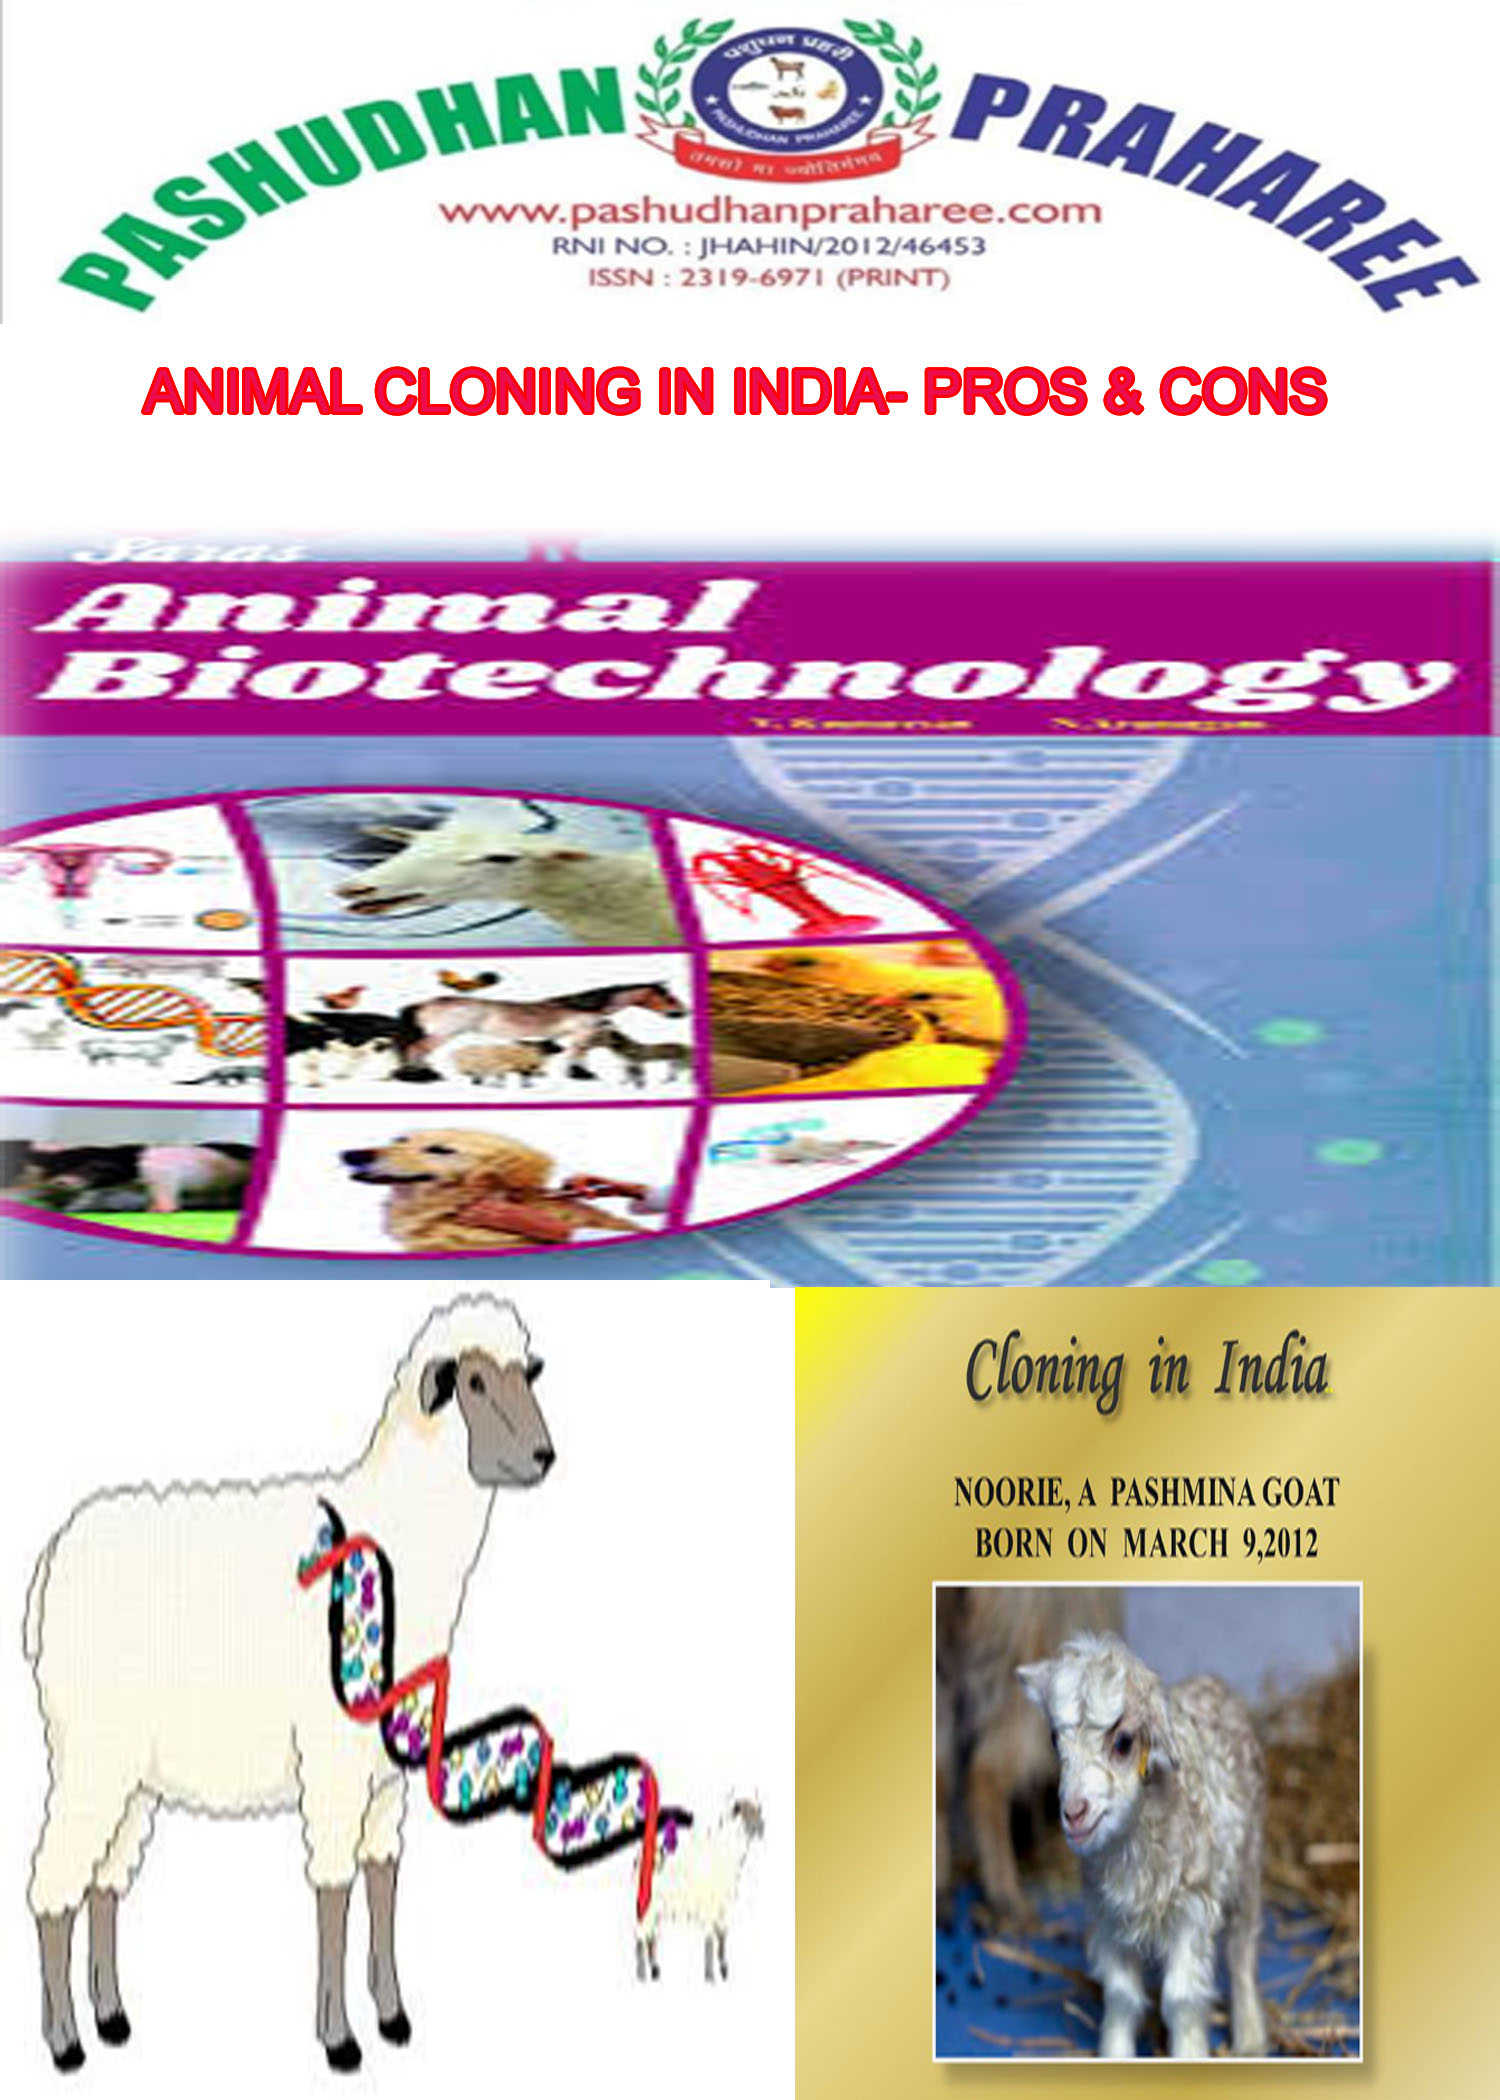 ANIMAL CLONING IN INDIA- PROS & CONS – Pashudhan praharee